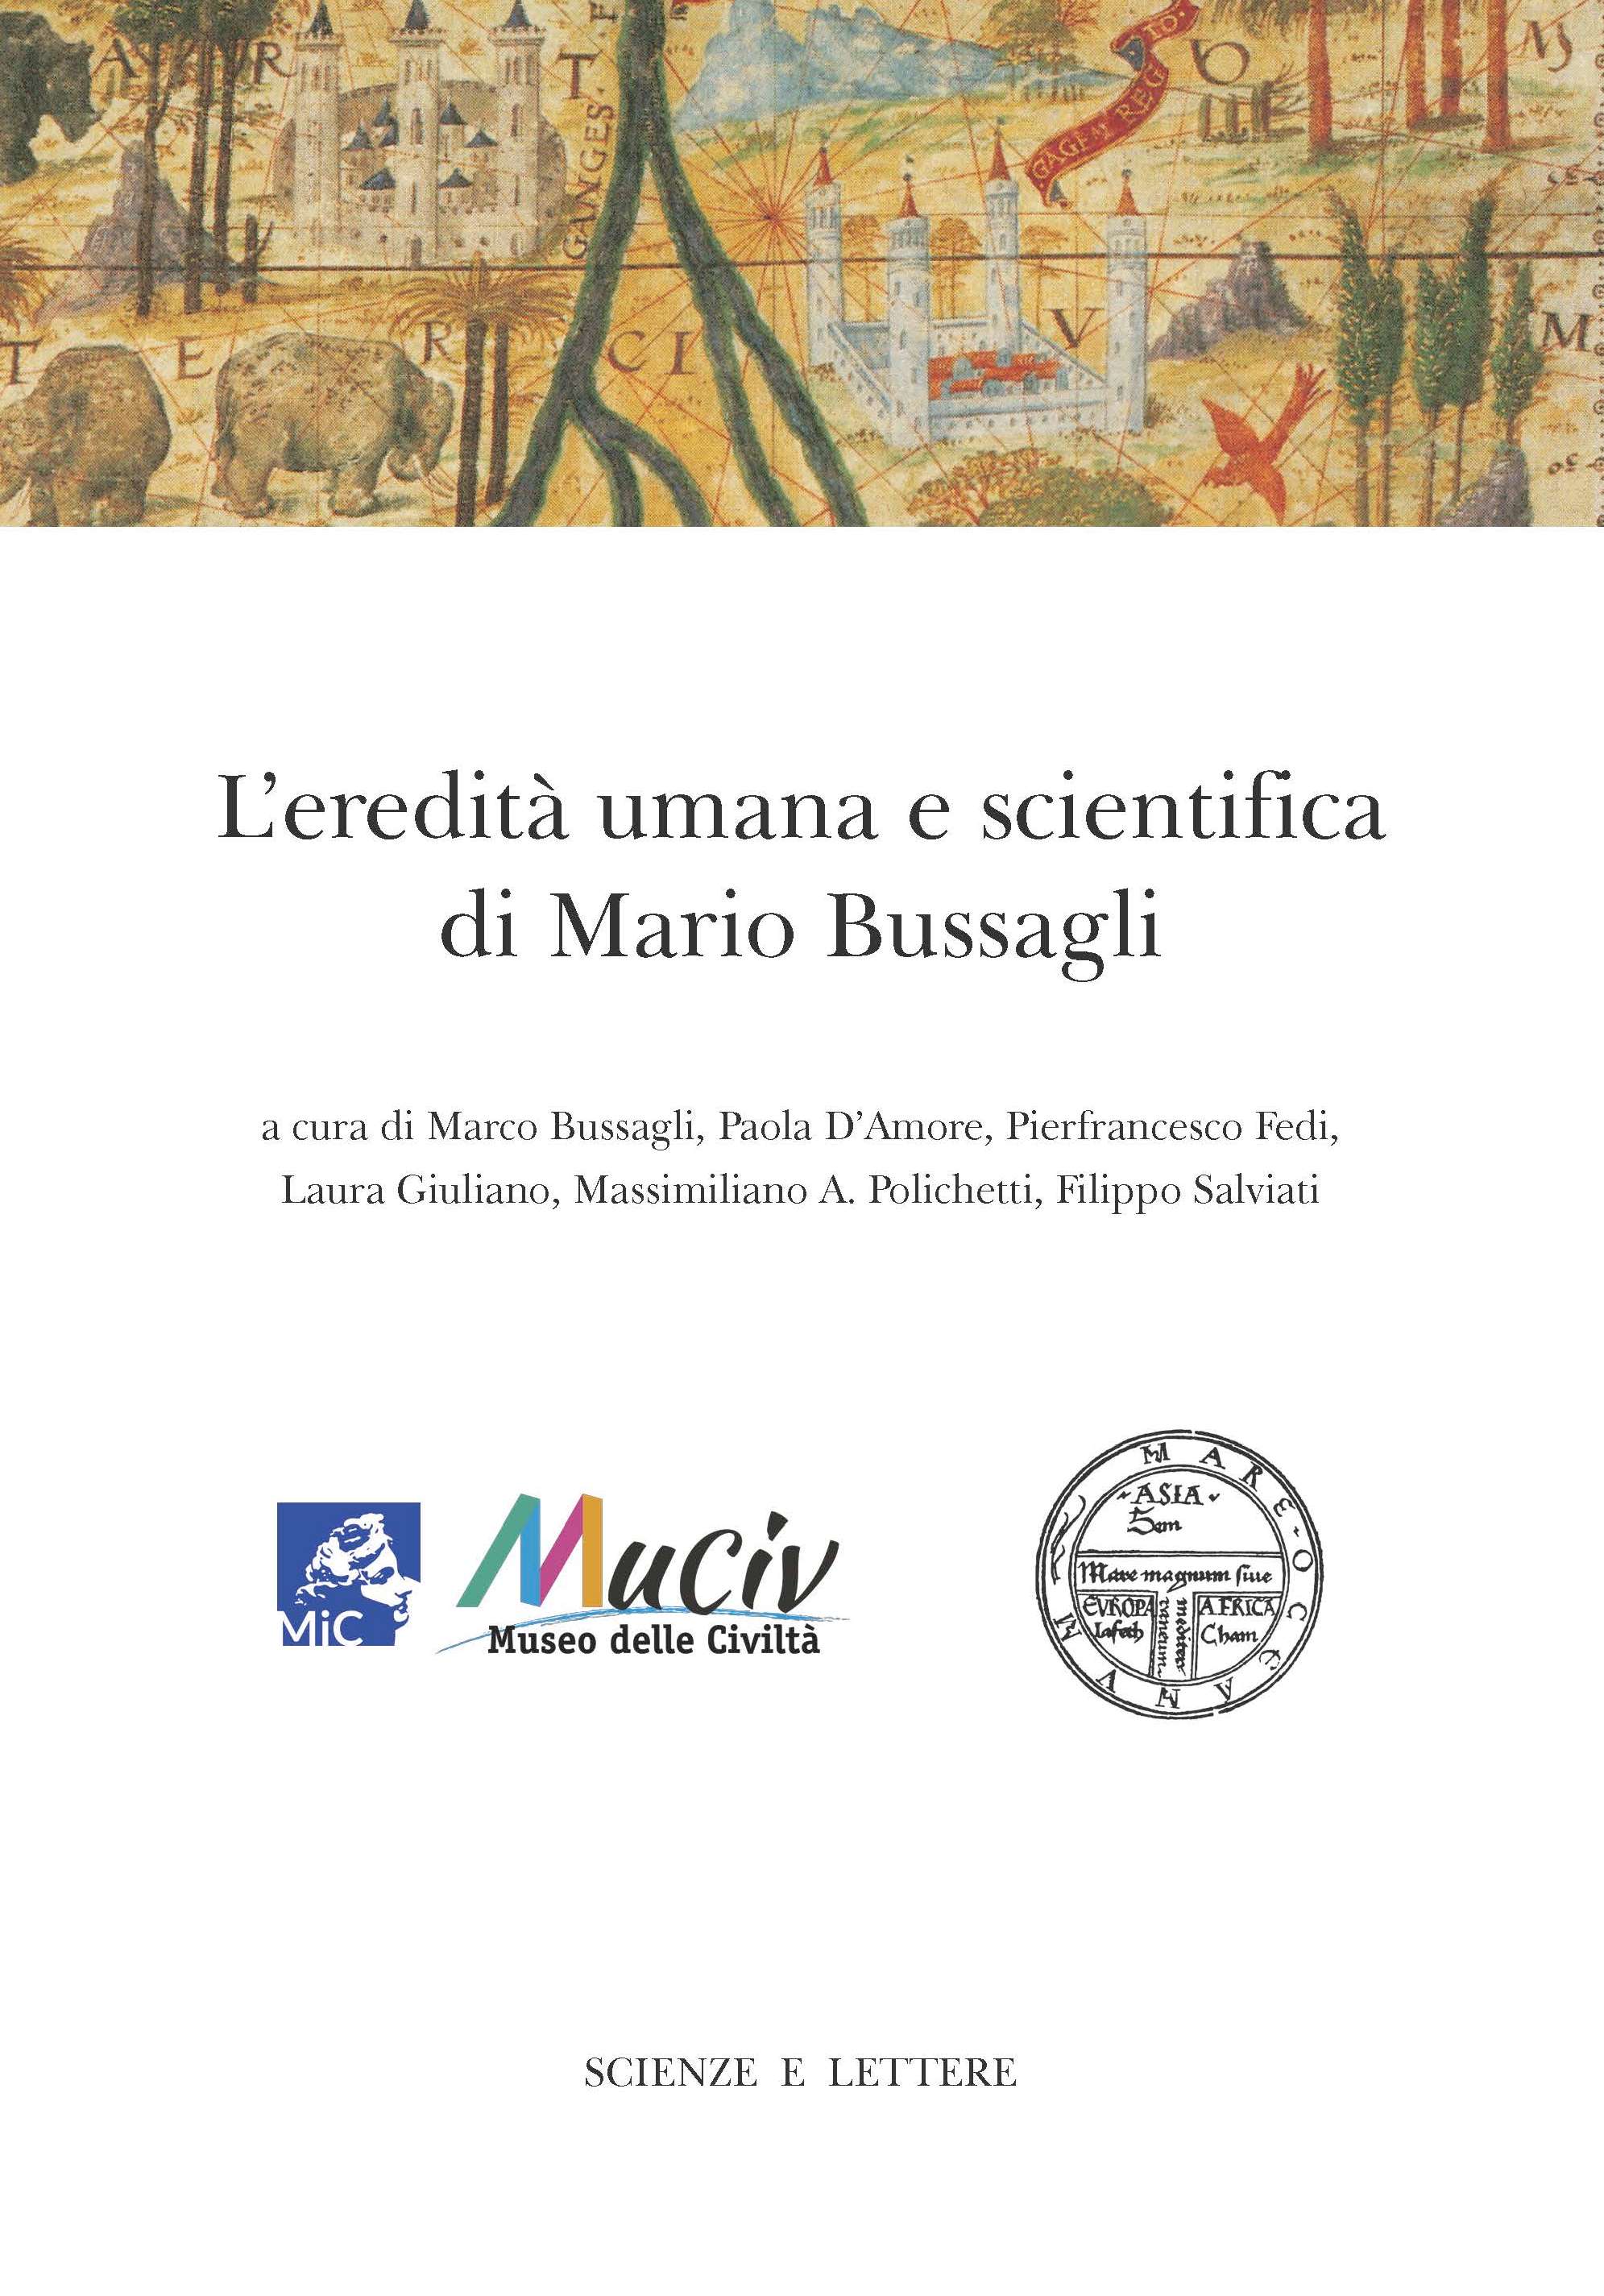 L'eredità umana e scientifica di Mario Bussagli - Novissimo Ramusio 27